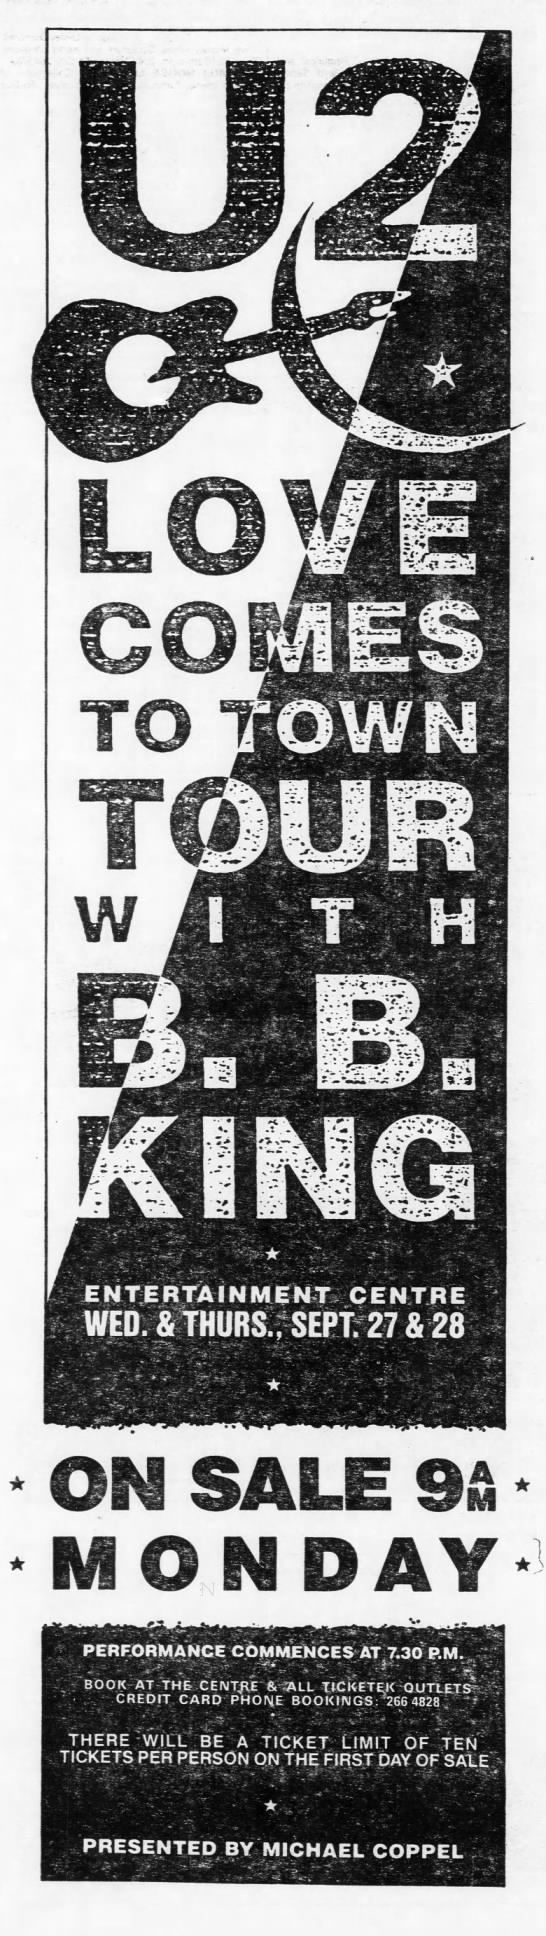 https://u2tours.com/tours/concert/entertainment-center-sydney-sep-27-1989 - 